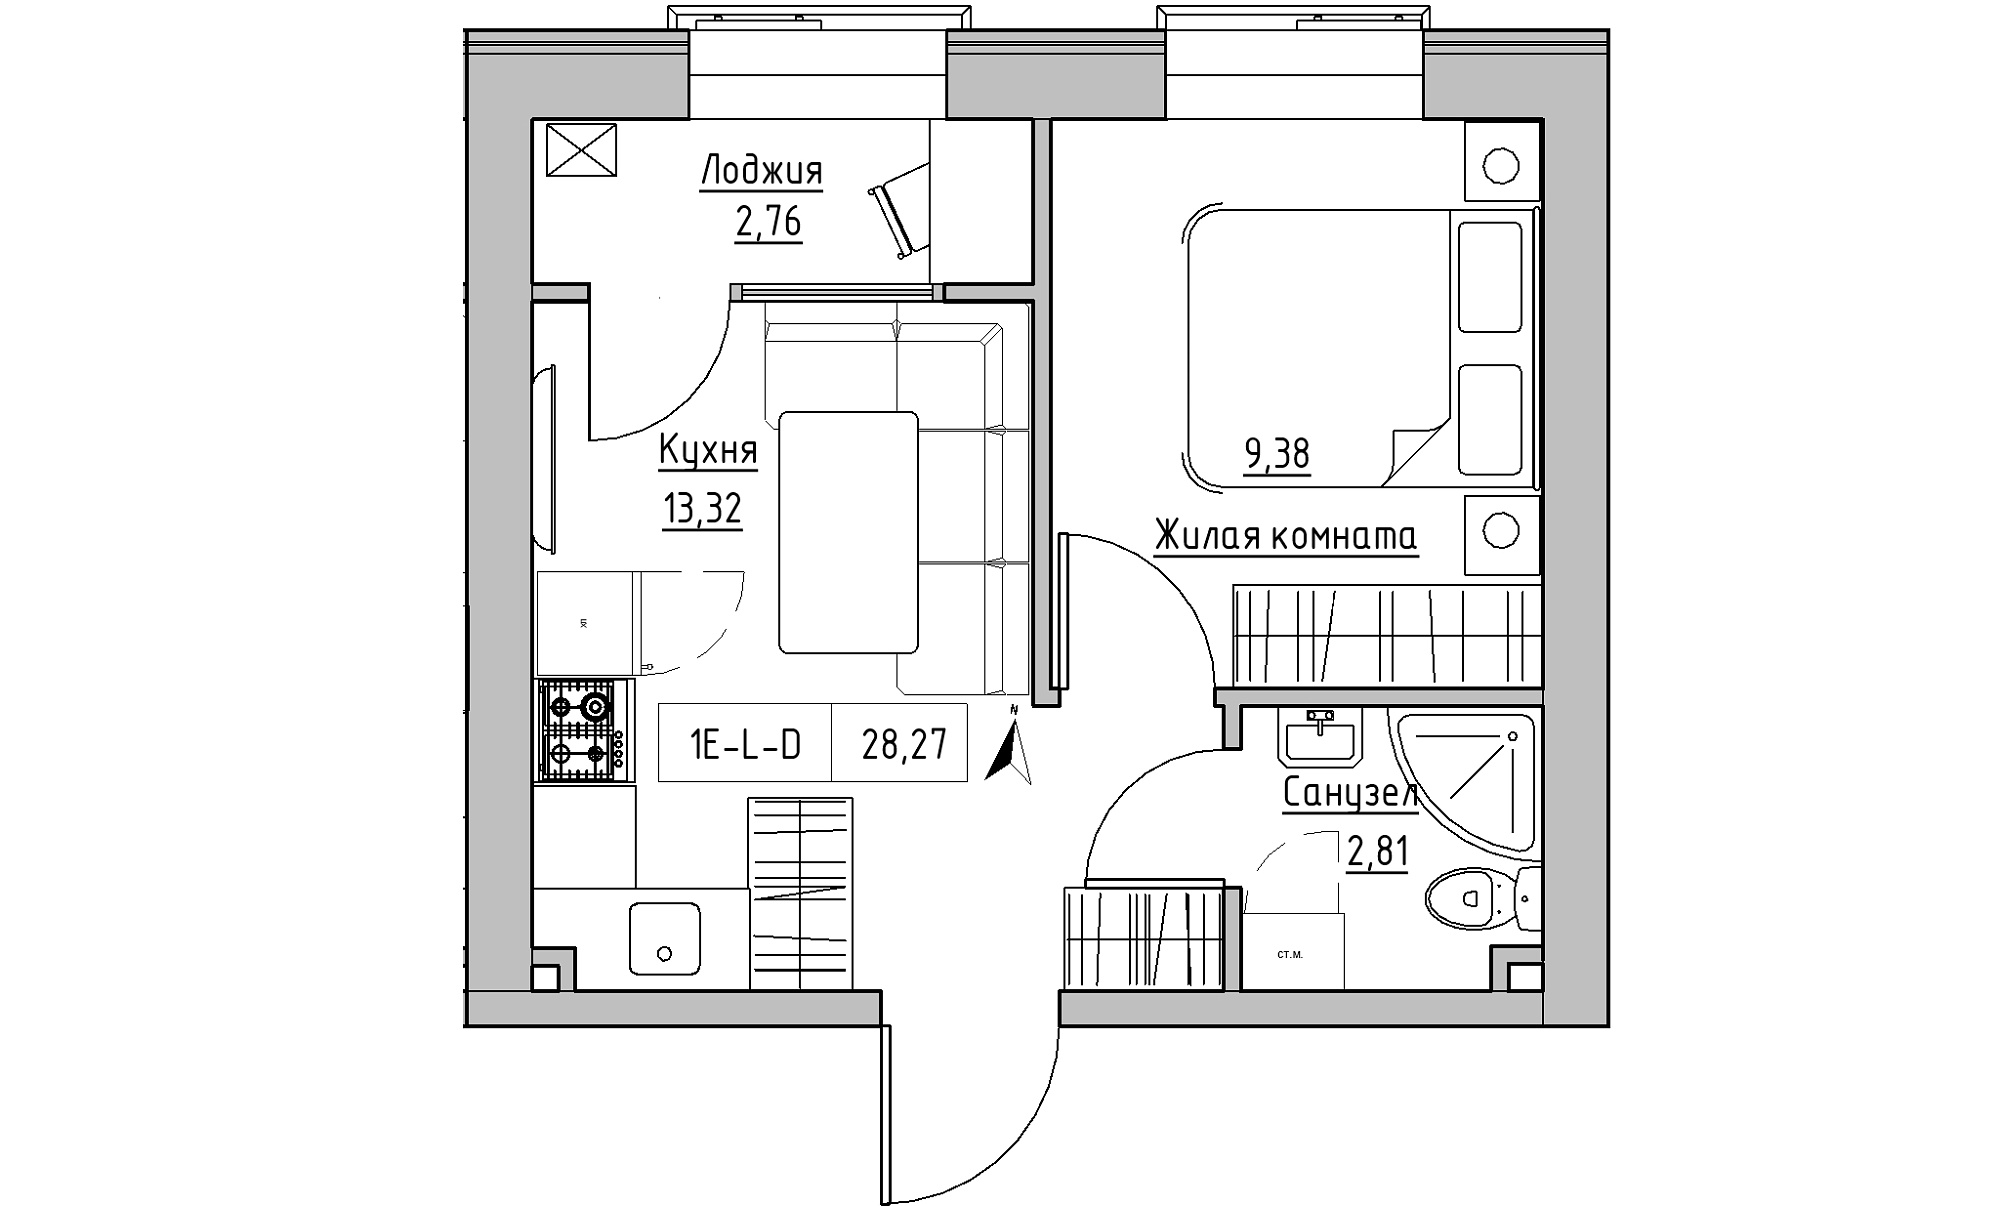 Планування 1-к квартира площею 28.27м2, KS-023-04/0017.